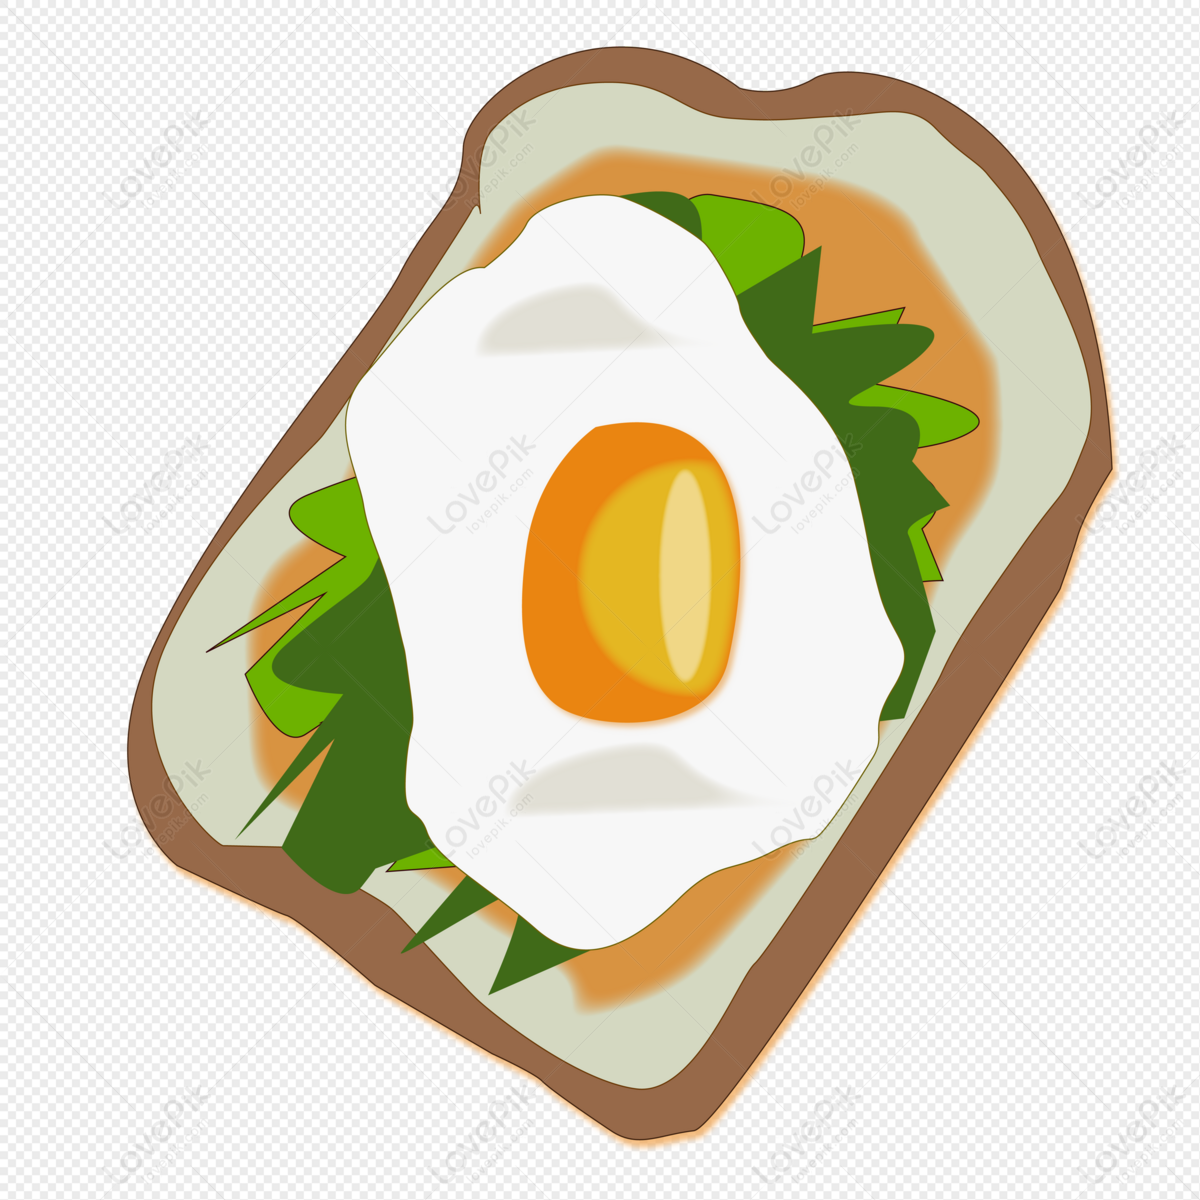 Hình ảnh Phim Hoạt Hình Vẽ Tay Bánh Mì Kẹp Trứng Luộc PNG Miễn Phí ...